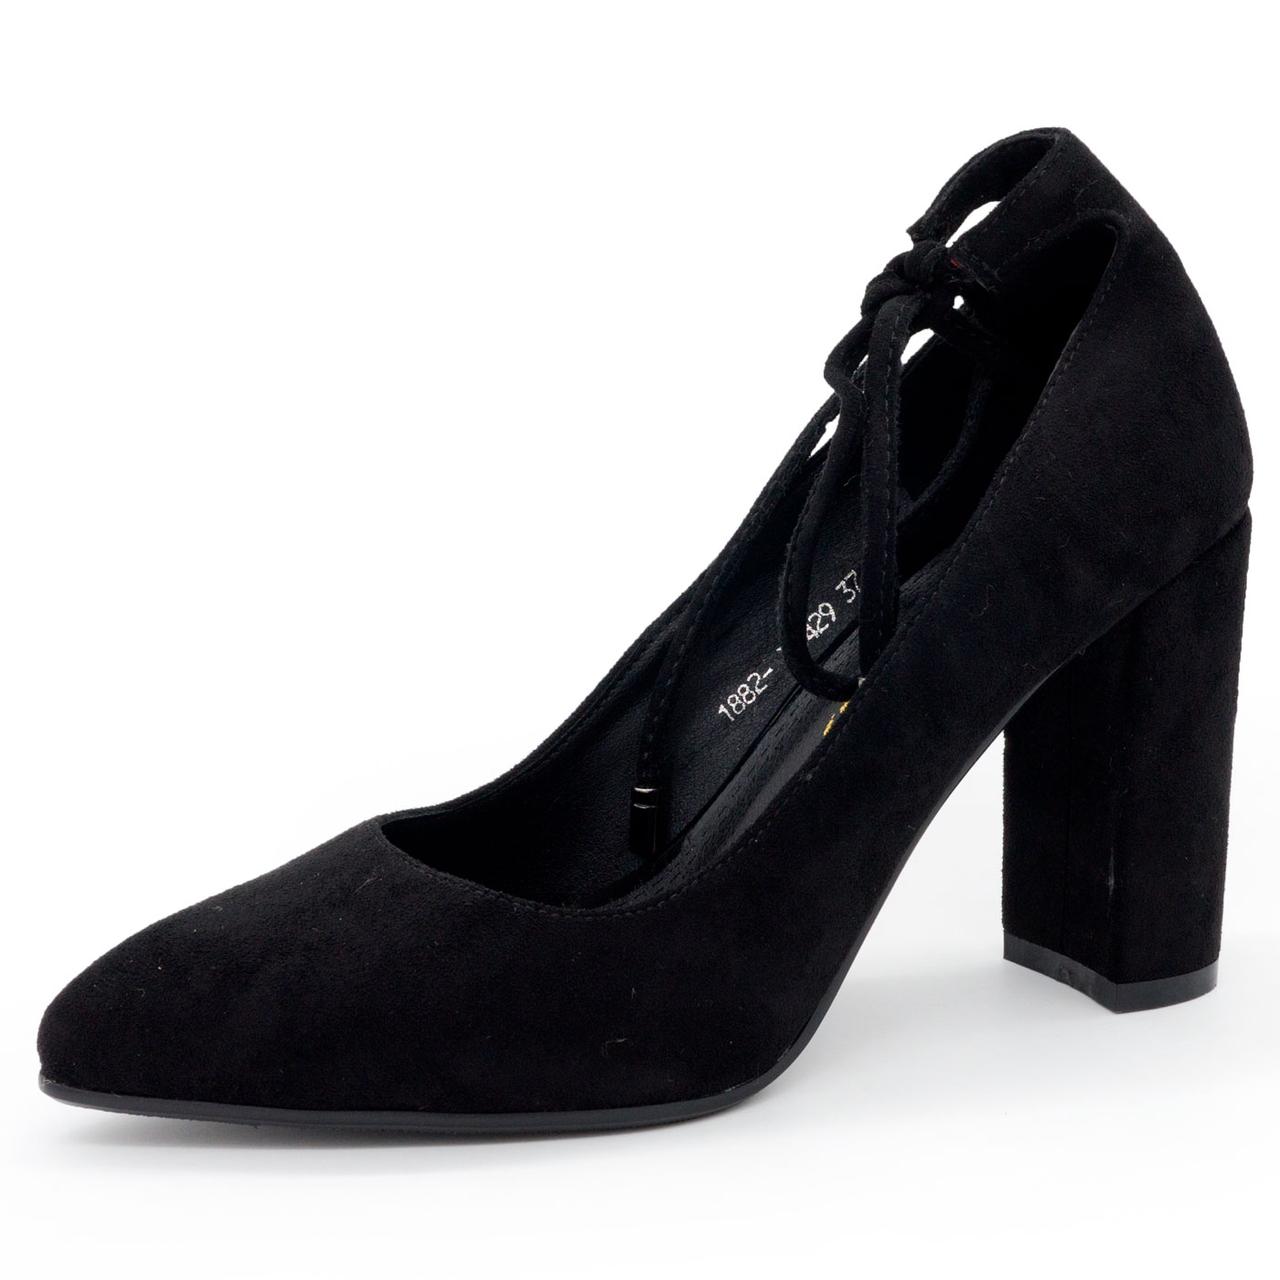 Жіночі туфлі LIICI 1882-X8429 чорні бант 39. Розміри в наявності: 39, 40.